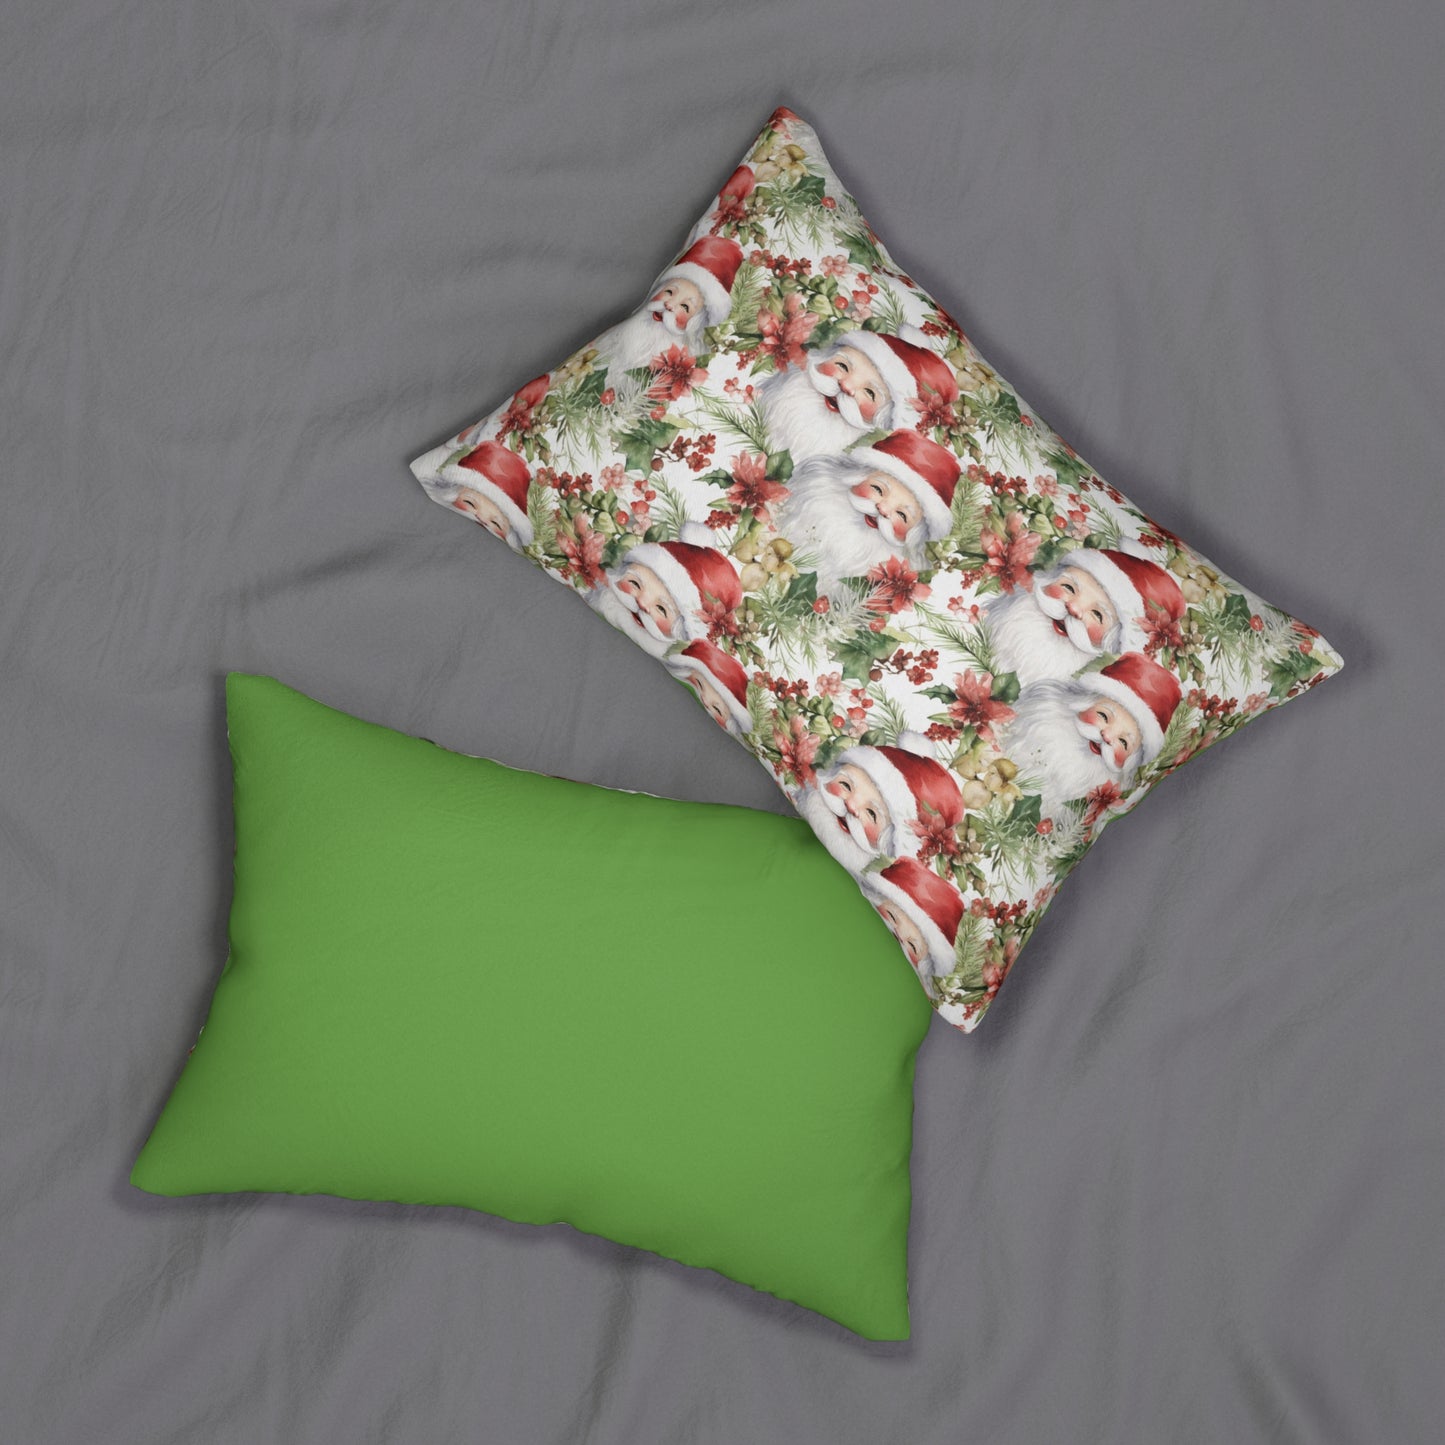 Santa Lumbar Pillow, Christmas Lumbar Pillow, Holiday  Couch Pillow Cover